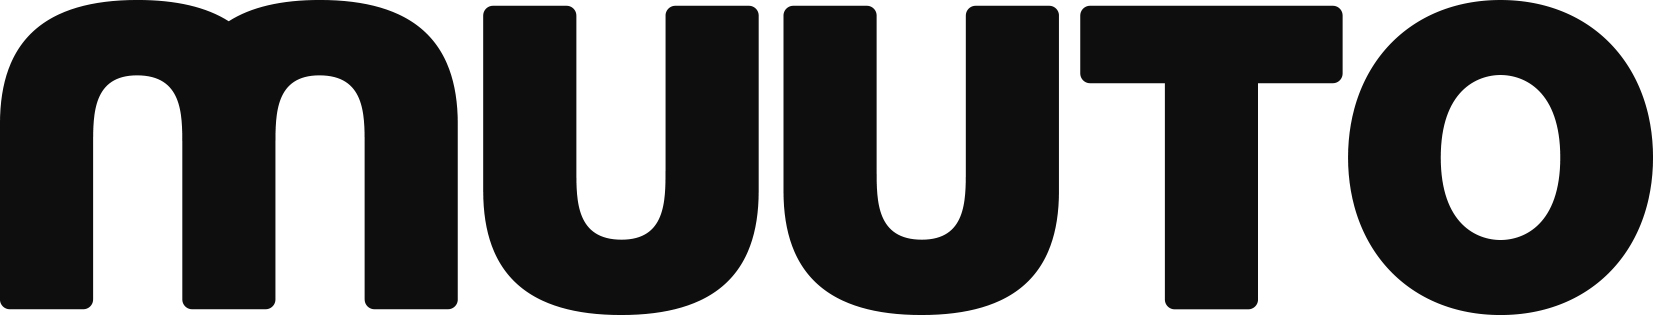 Muuto Logo